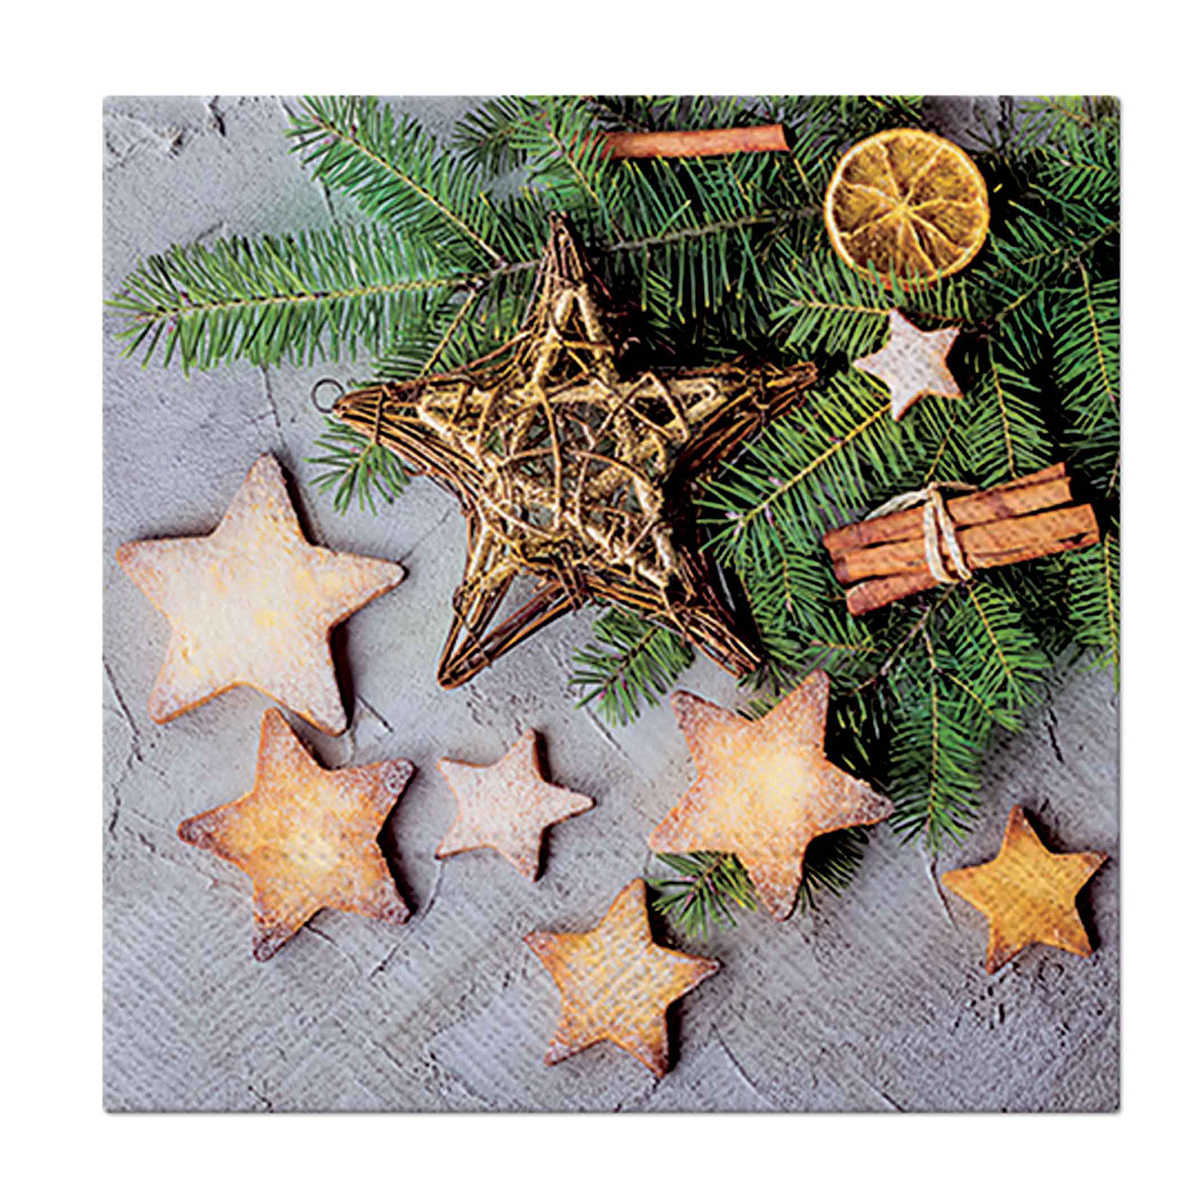 Χριστουγεννιάτικες Χαρτοπετσέτες Σετ 20τμχ (33×33) L-C Star Cakes 6SNL468